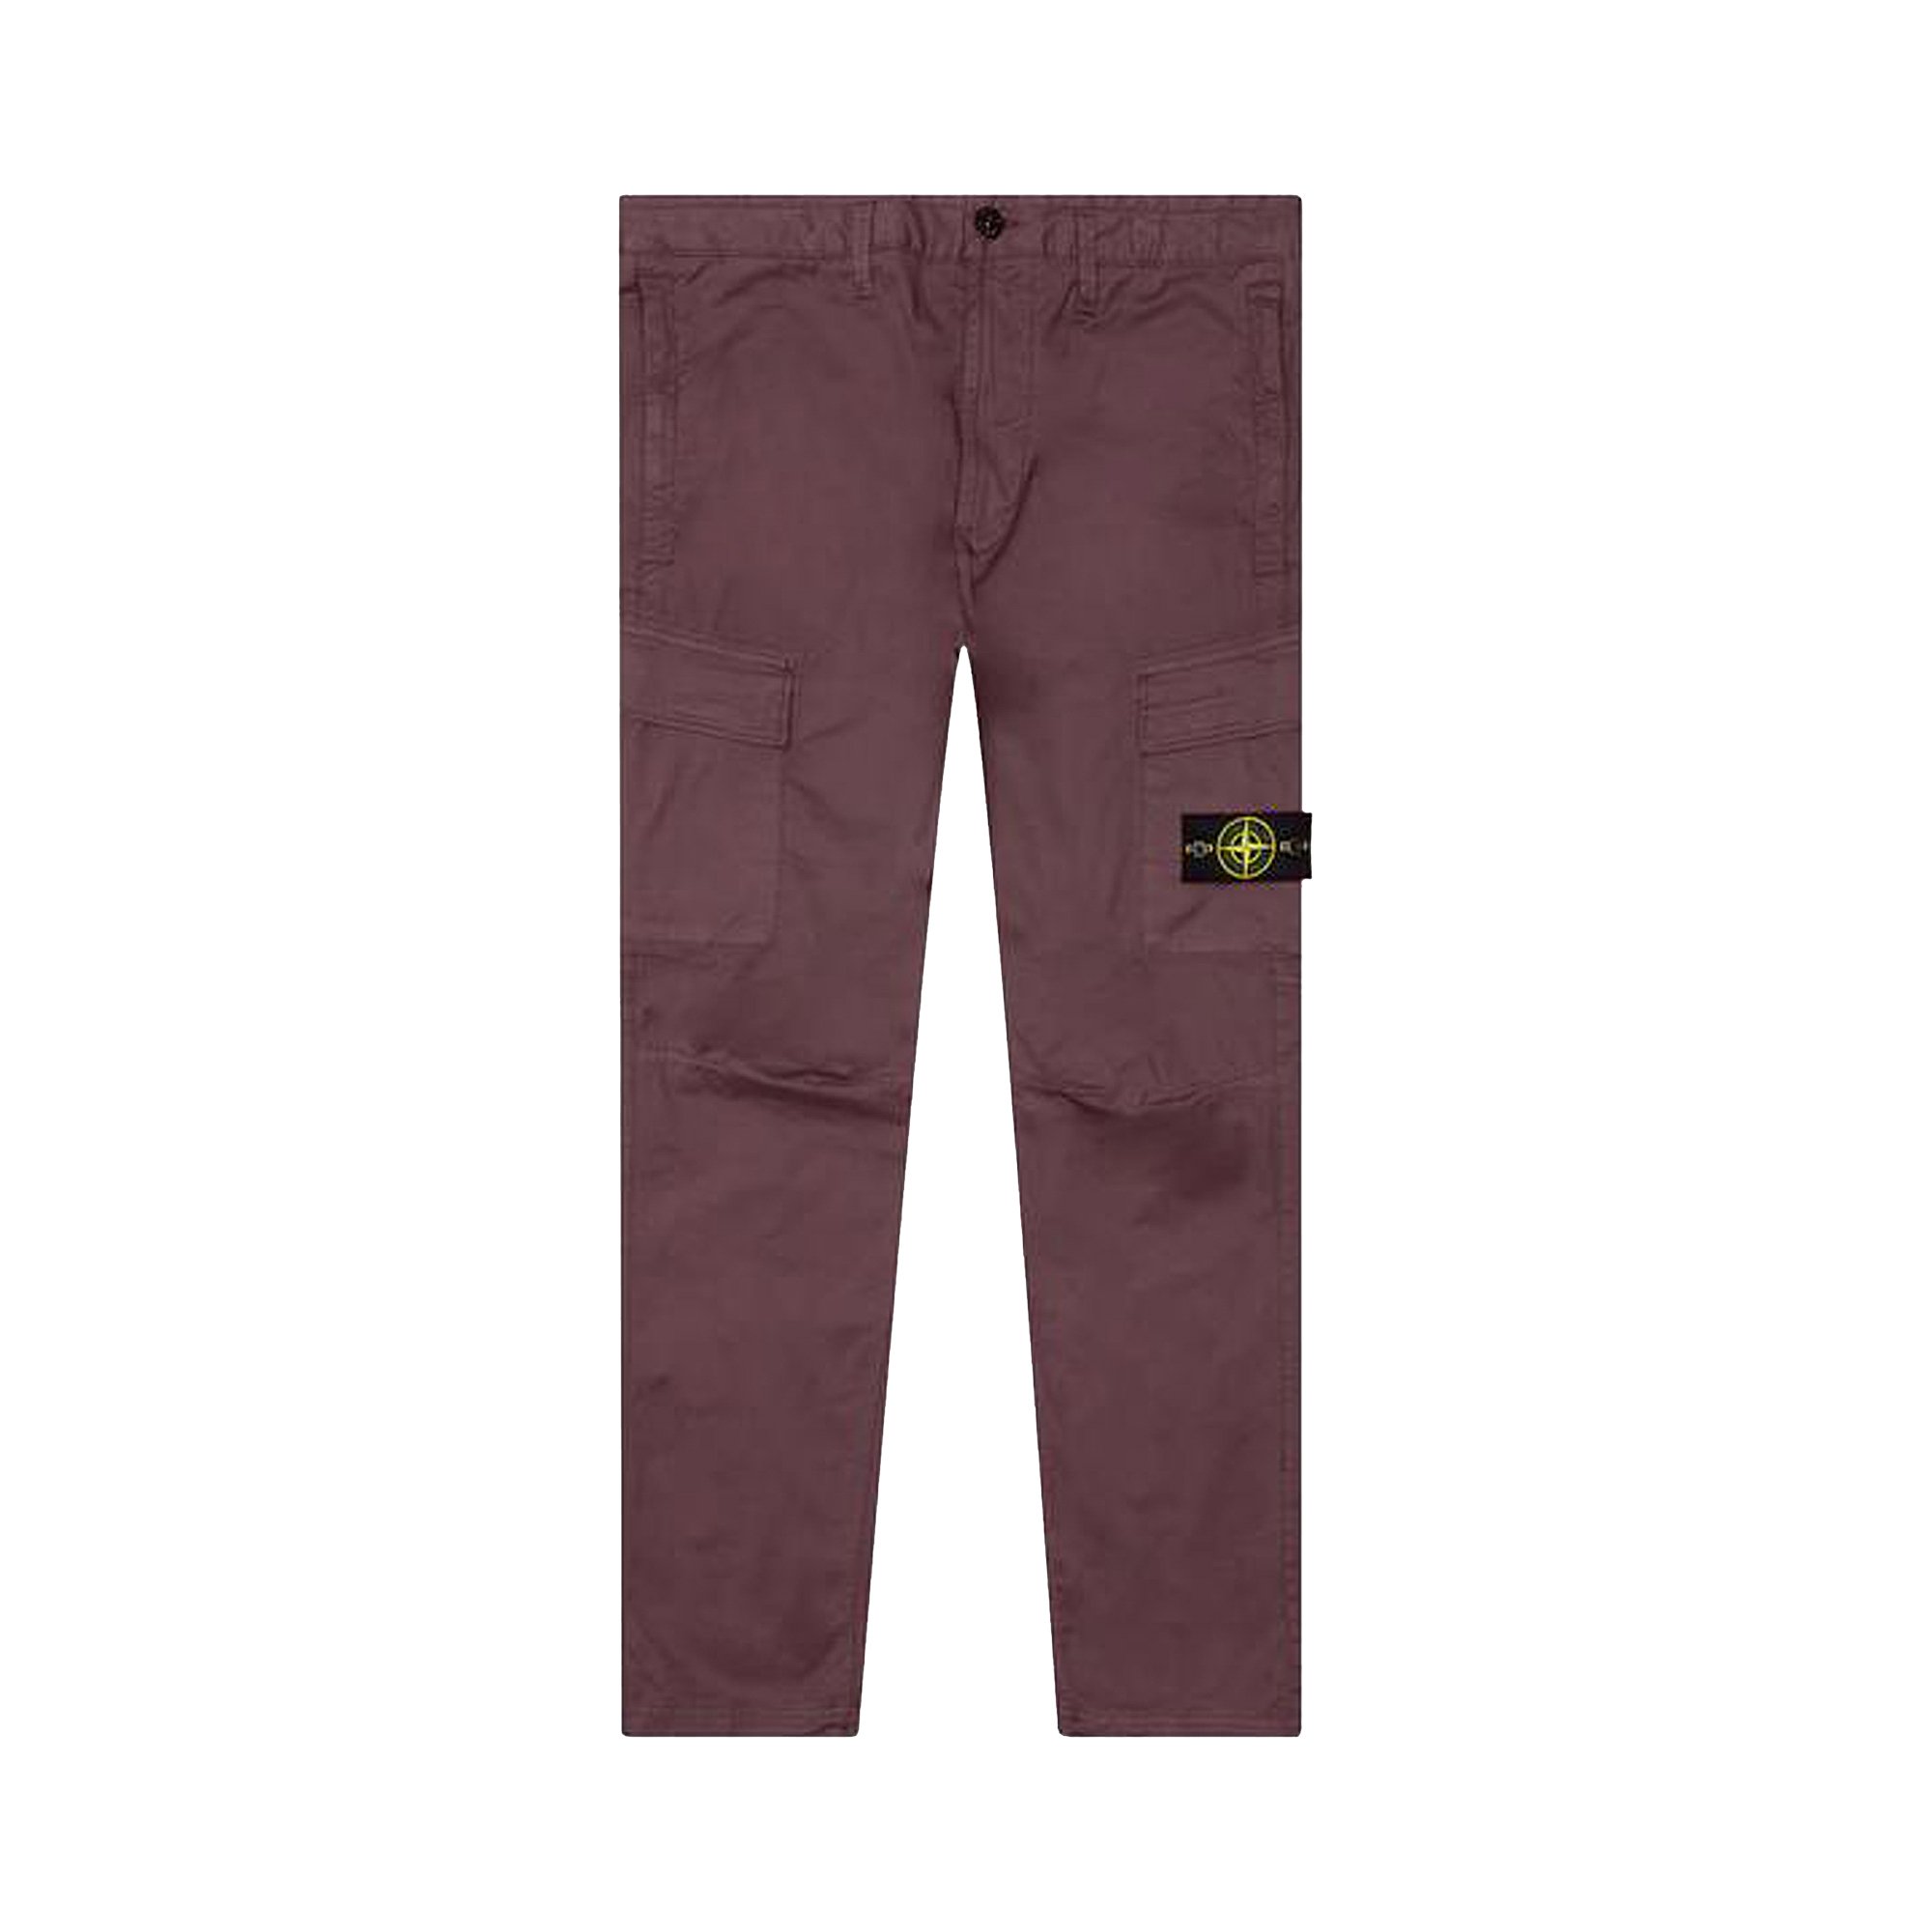 Buy Stone Island Cargo Pants 'Dark Burgundy' - 741531303 V0011 | GOAT